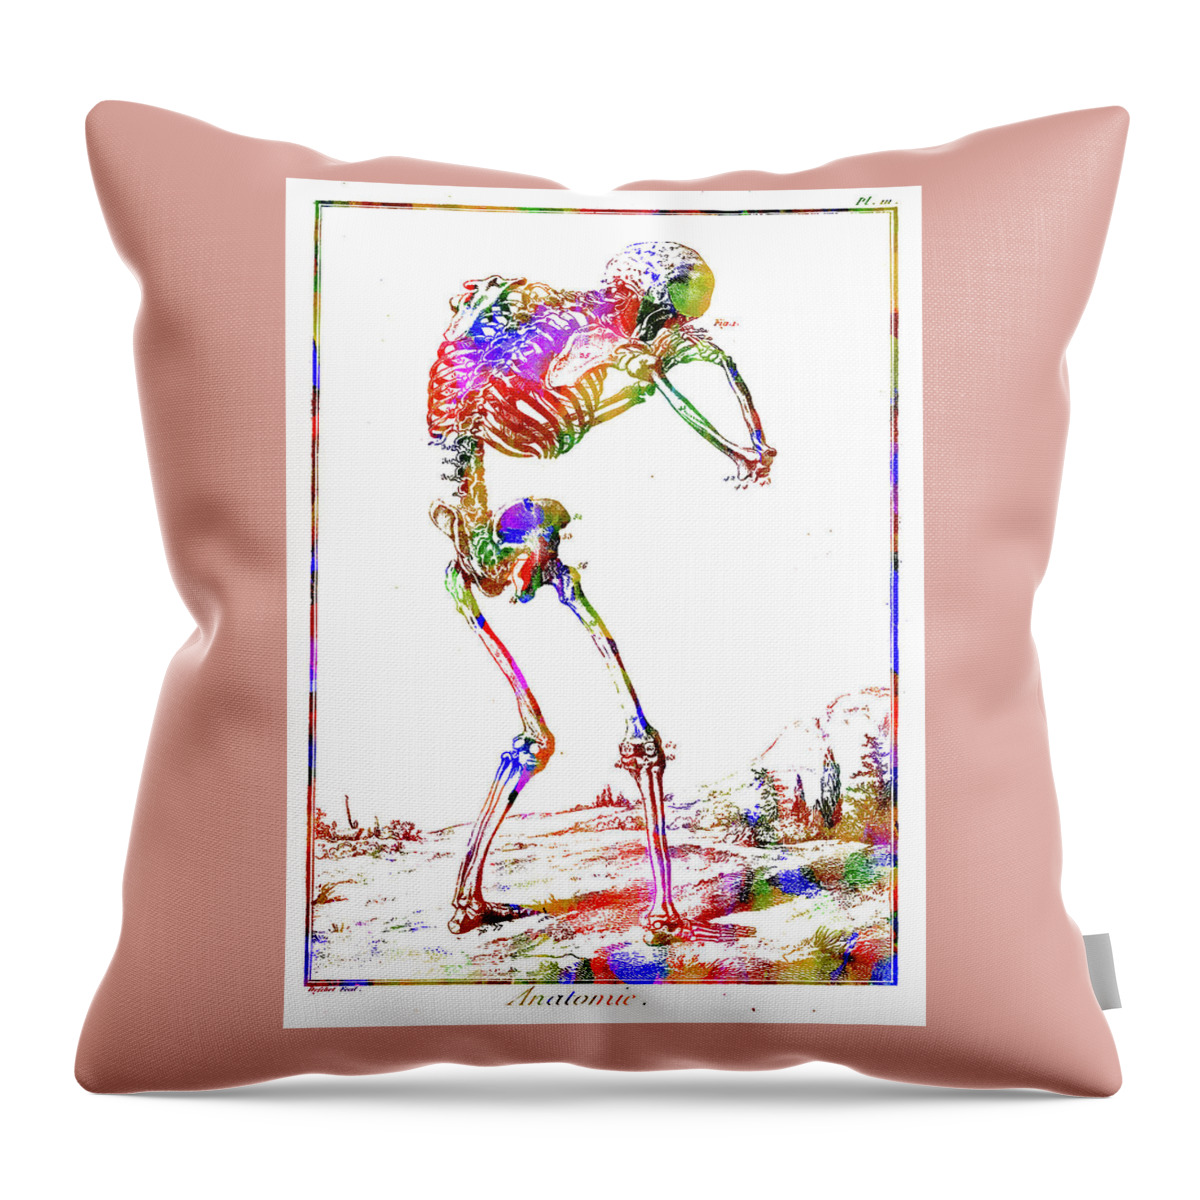 Skeleton Throw Pillow featuring the mixed media Skeleton by Ann Leech